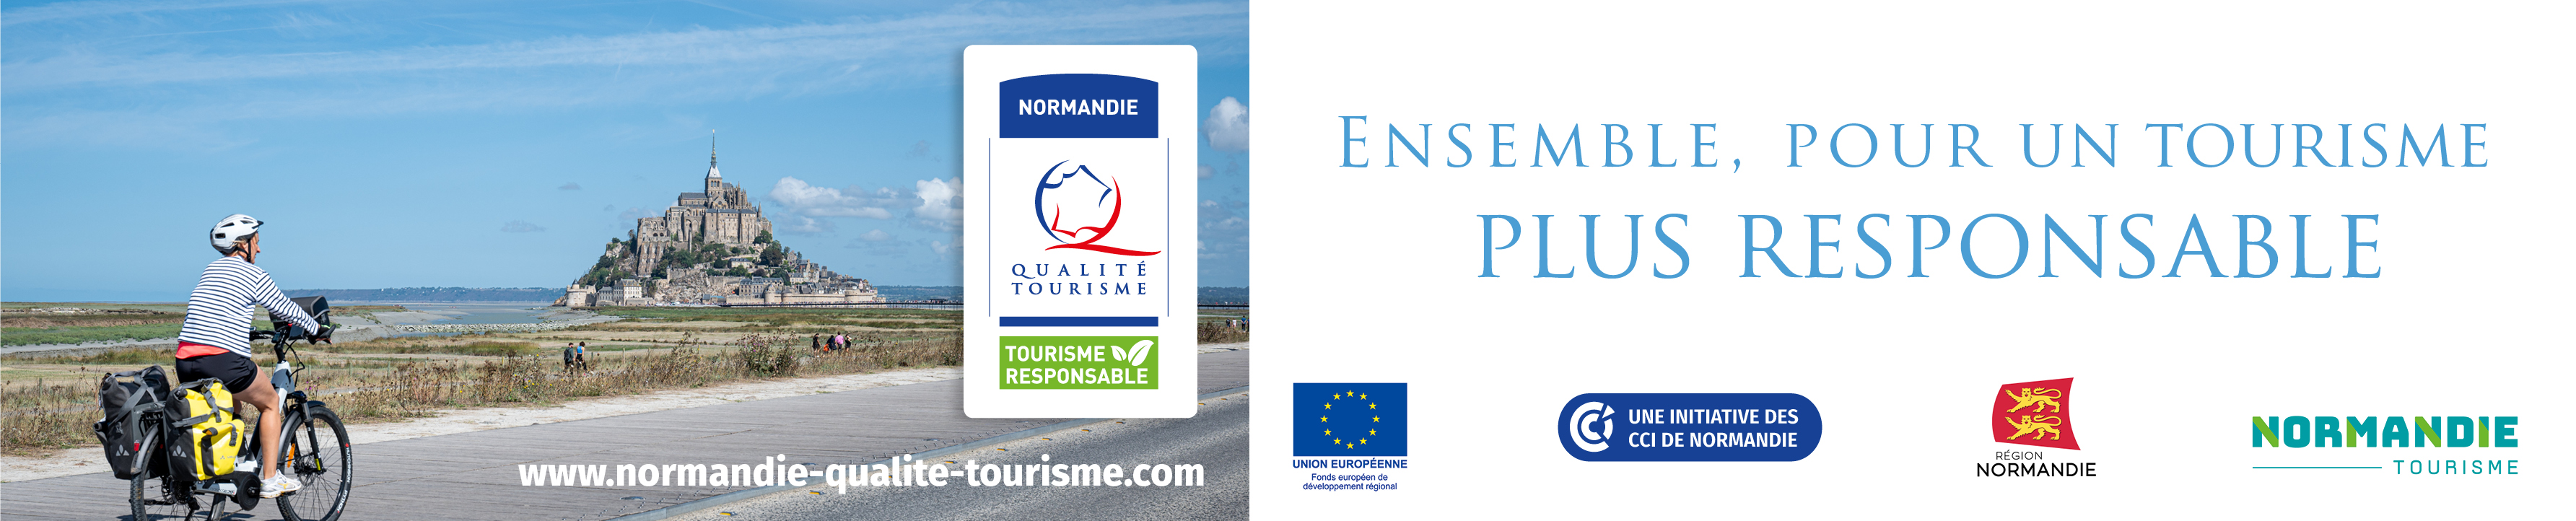 Normandie qualité tourisme Responsable IMAGE